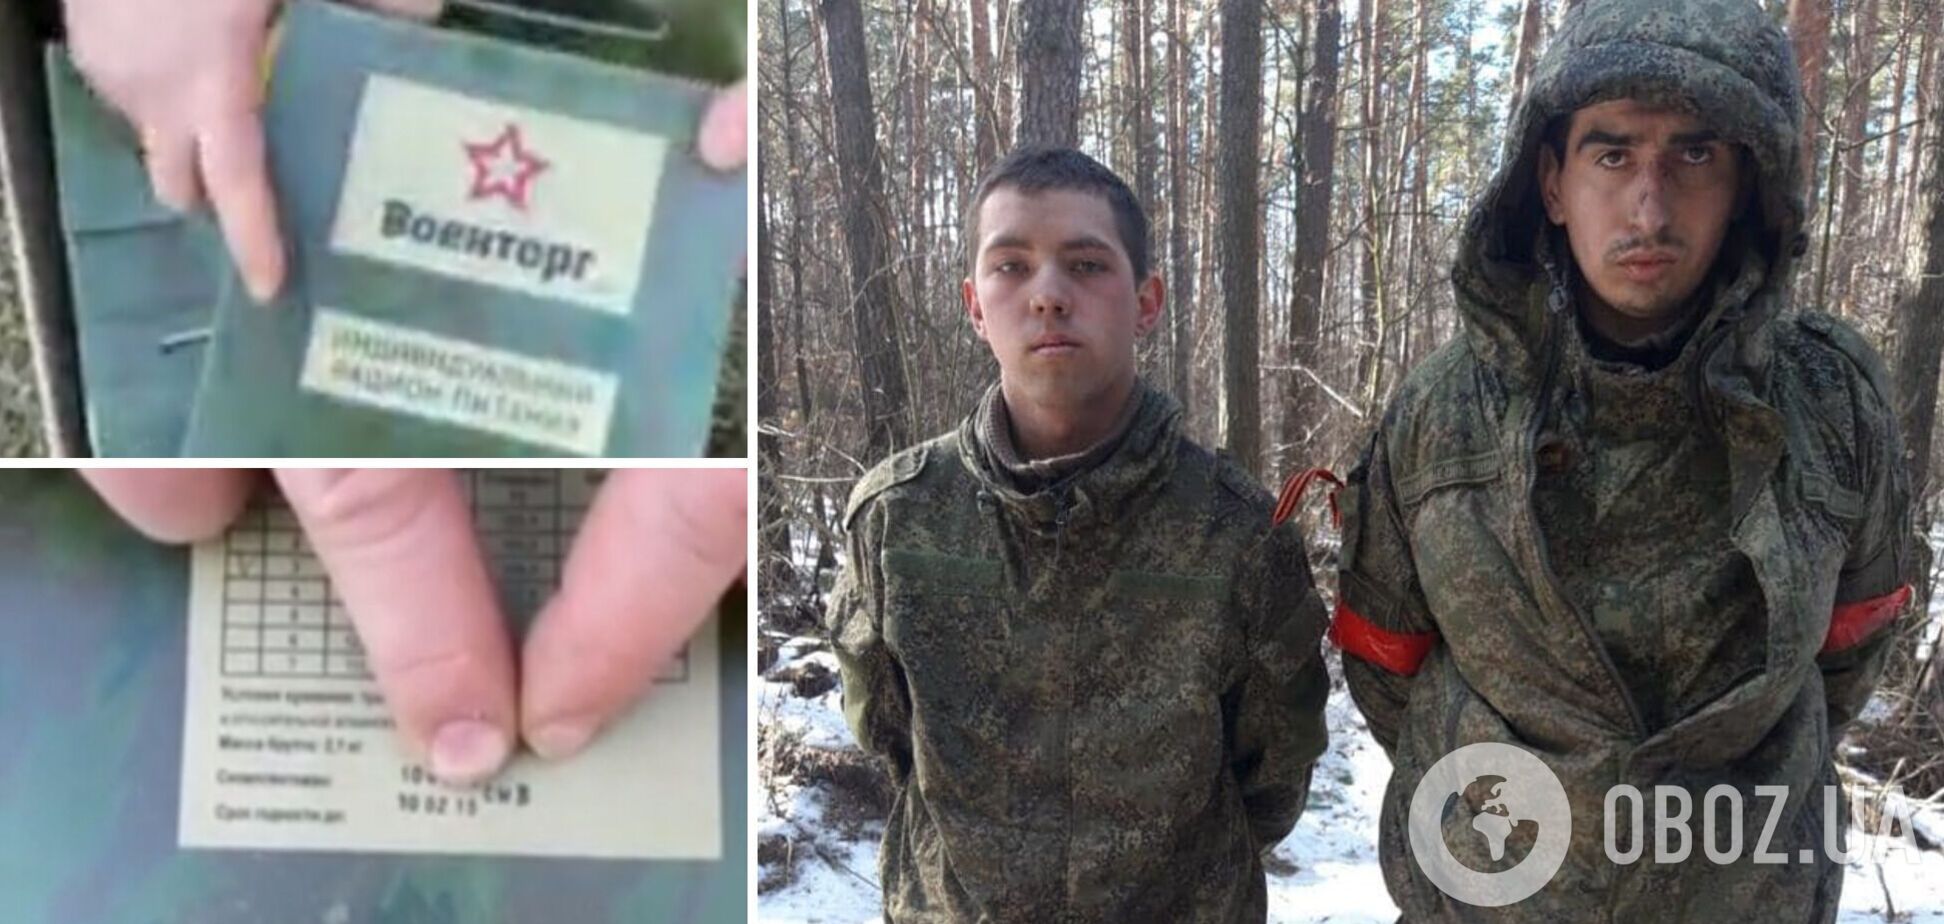 Российских солдат, которых перебросили в Украину, снабдили просроченными на семь лет пайками. Видео